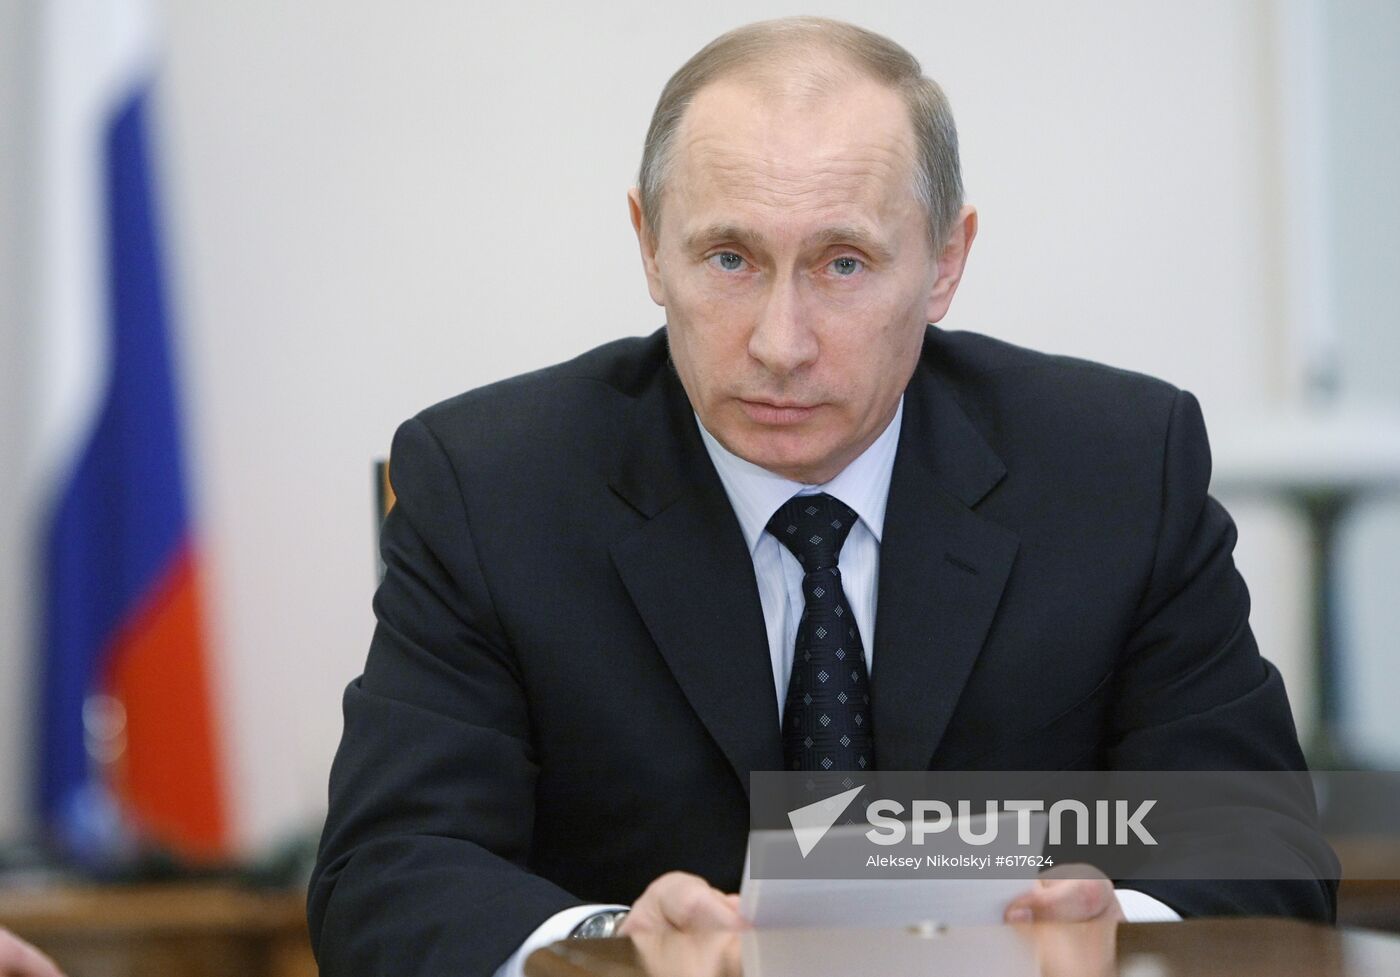 Vladimir Putin chairs meeting in Novo-Ogaryovo